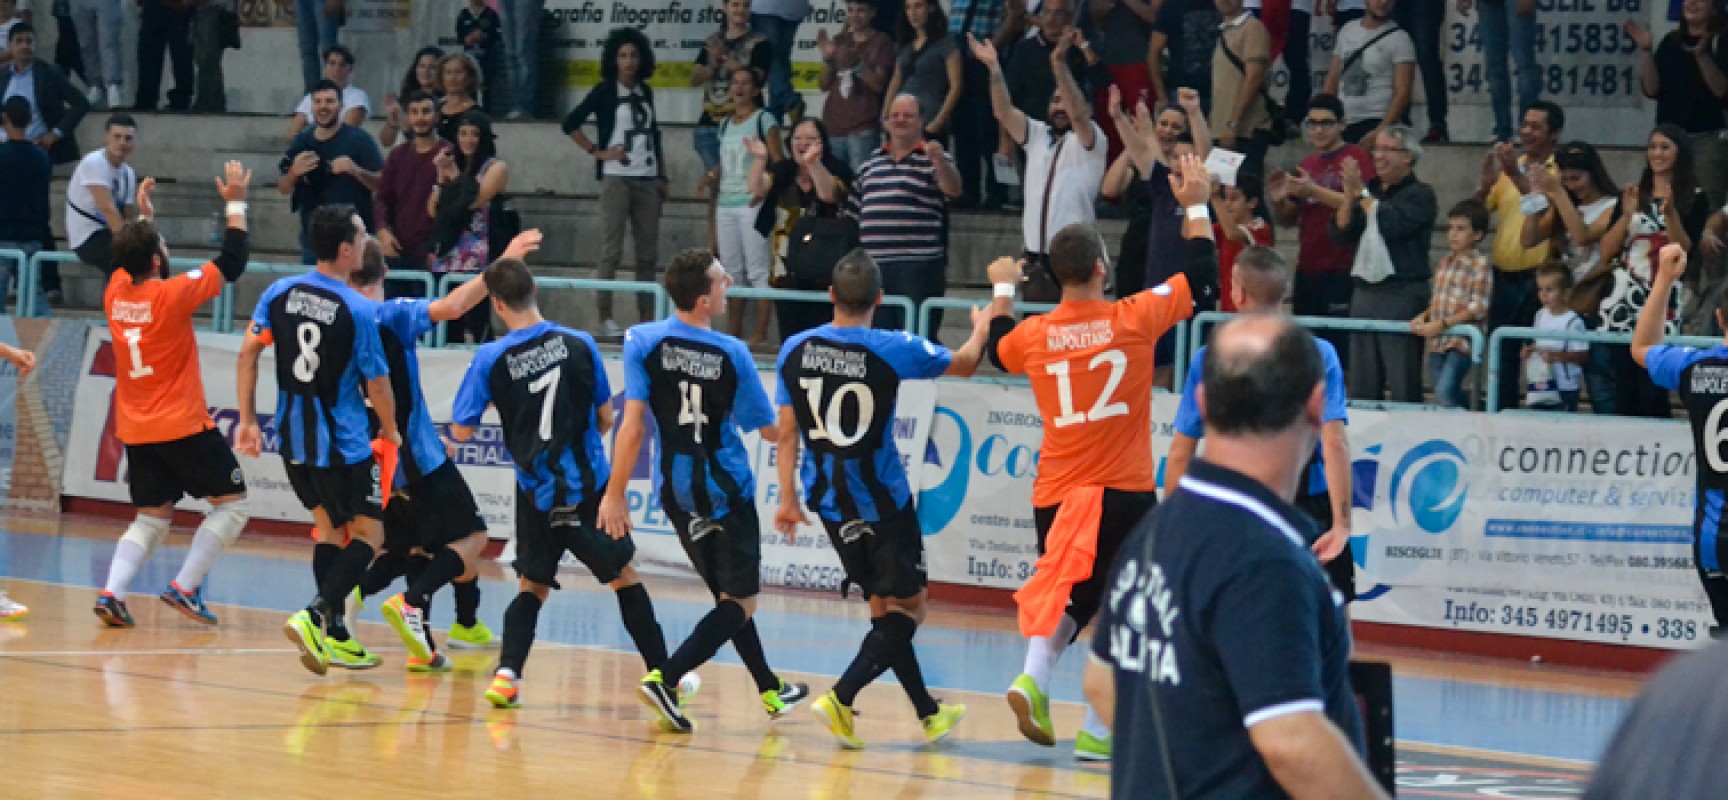 Il Futsal Bisceglie batte in rimonta il quotato Futsal Barletta e vola in testa alla classifica